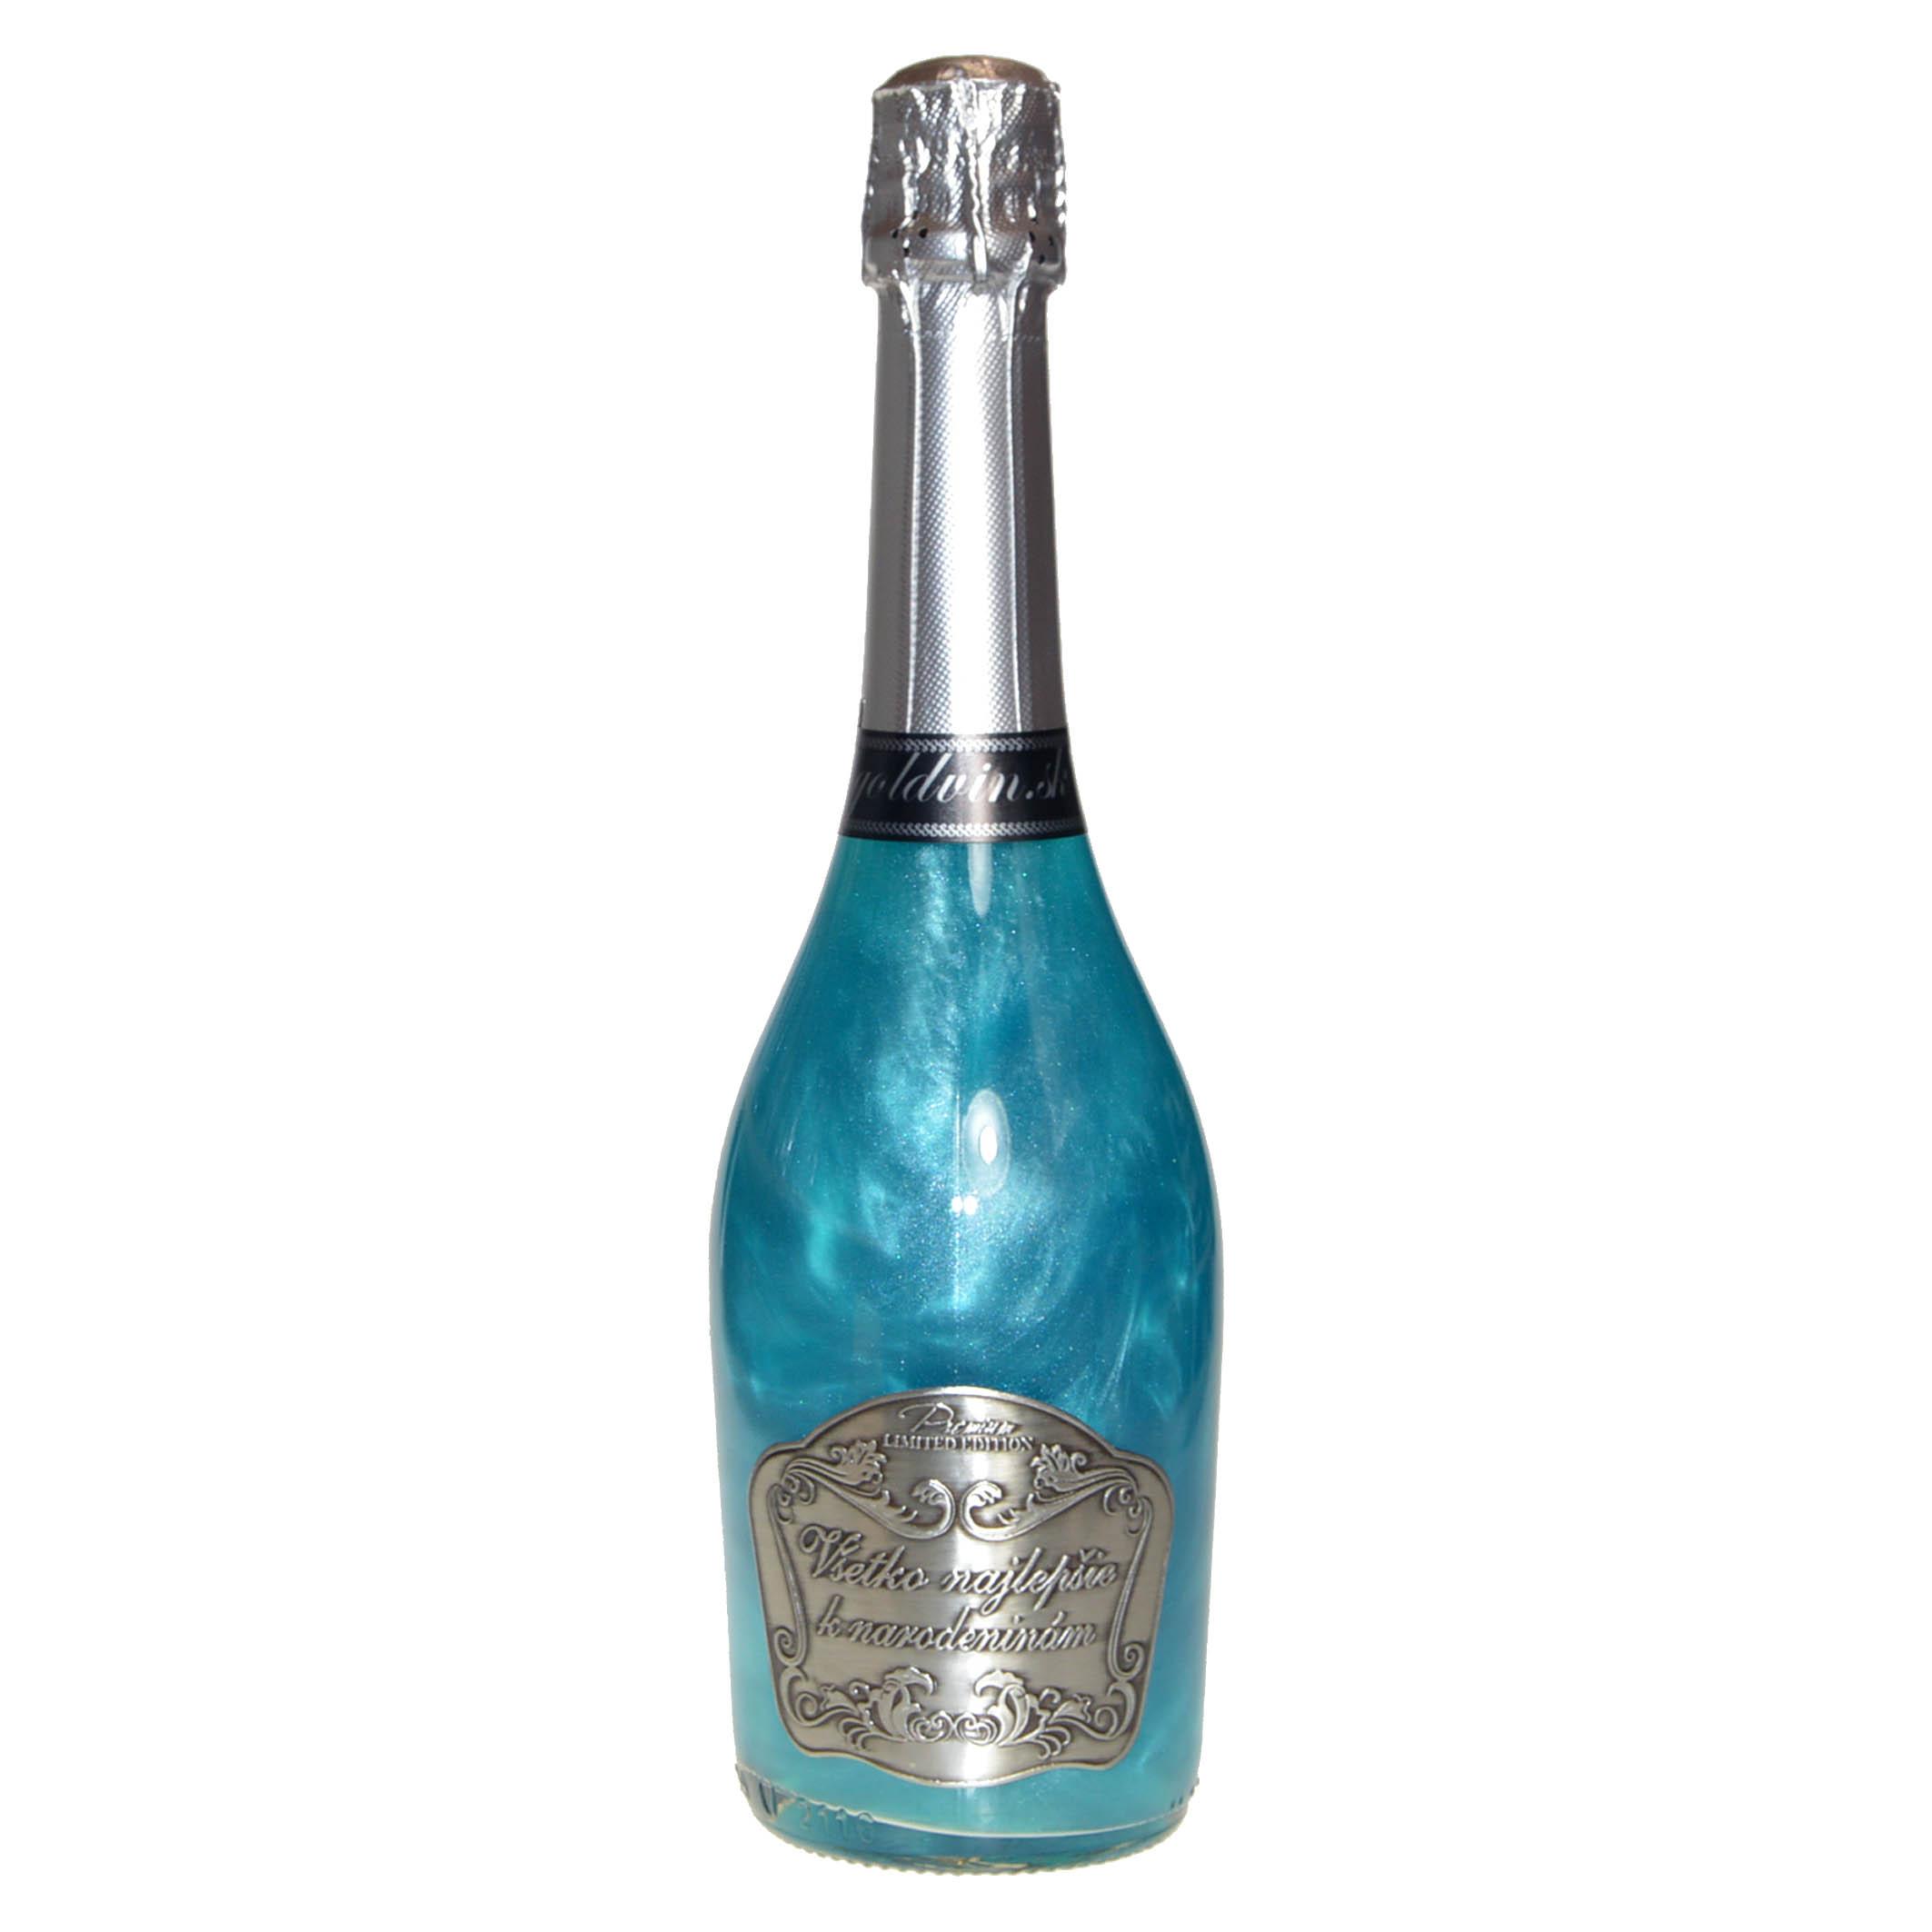 Perlové šampanské GHOST modré - Všetko najlepšie k narodeninám